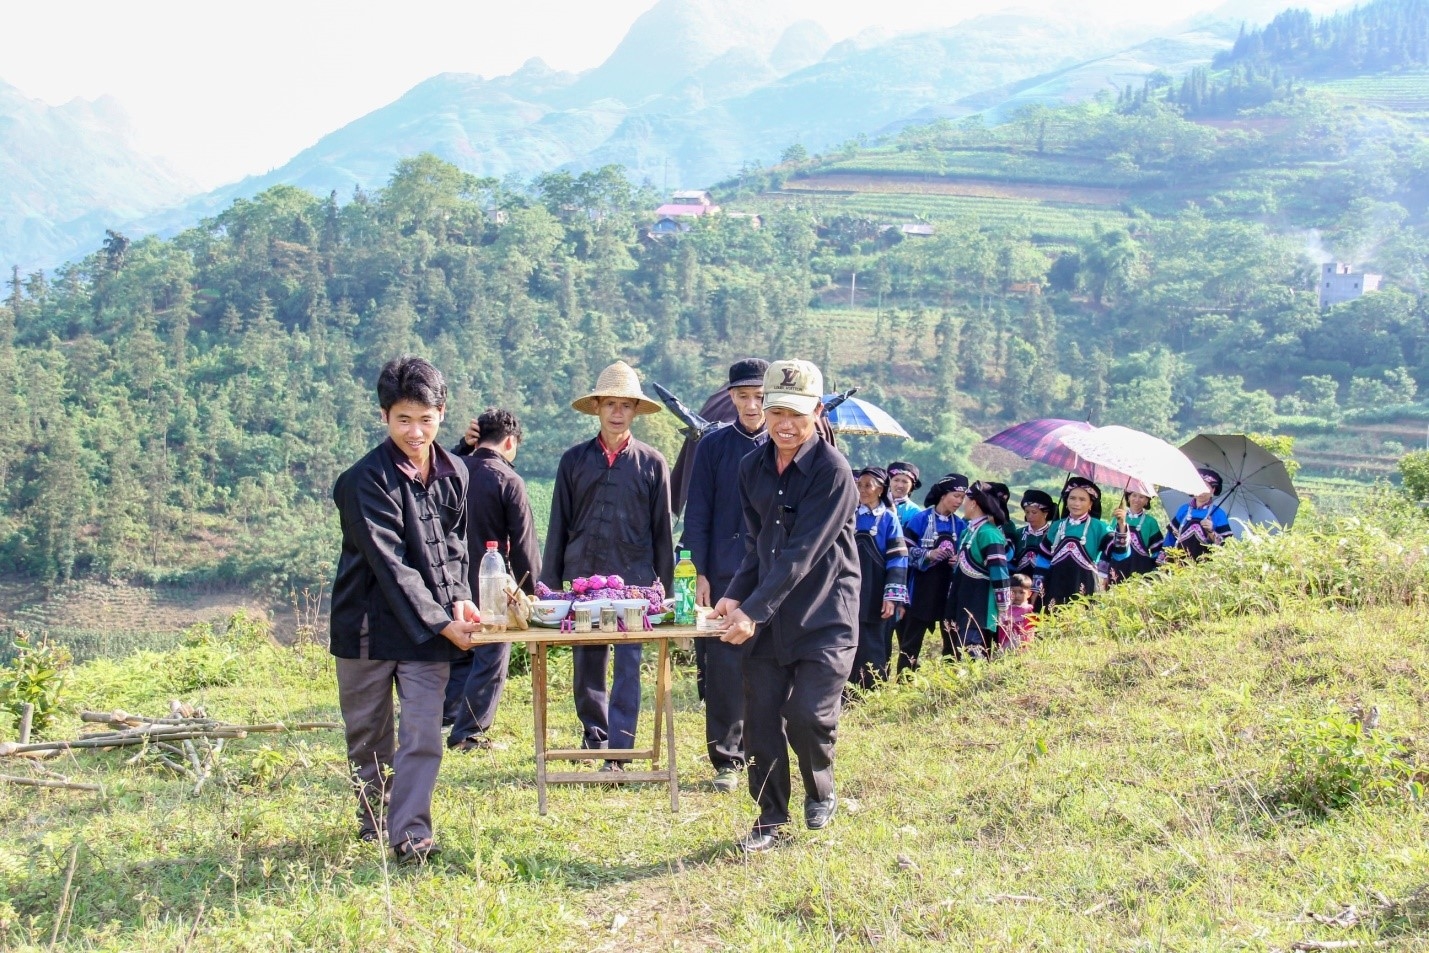 Tết “Sử Giề Pà – Lễ Tạ ơn trâu” của người Bố Y, huyện Mường Khương, tỉnh Lào Cai